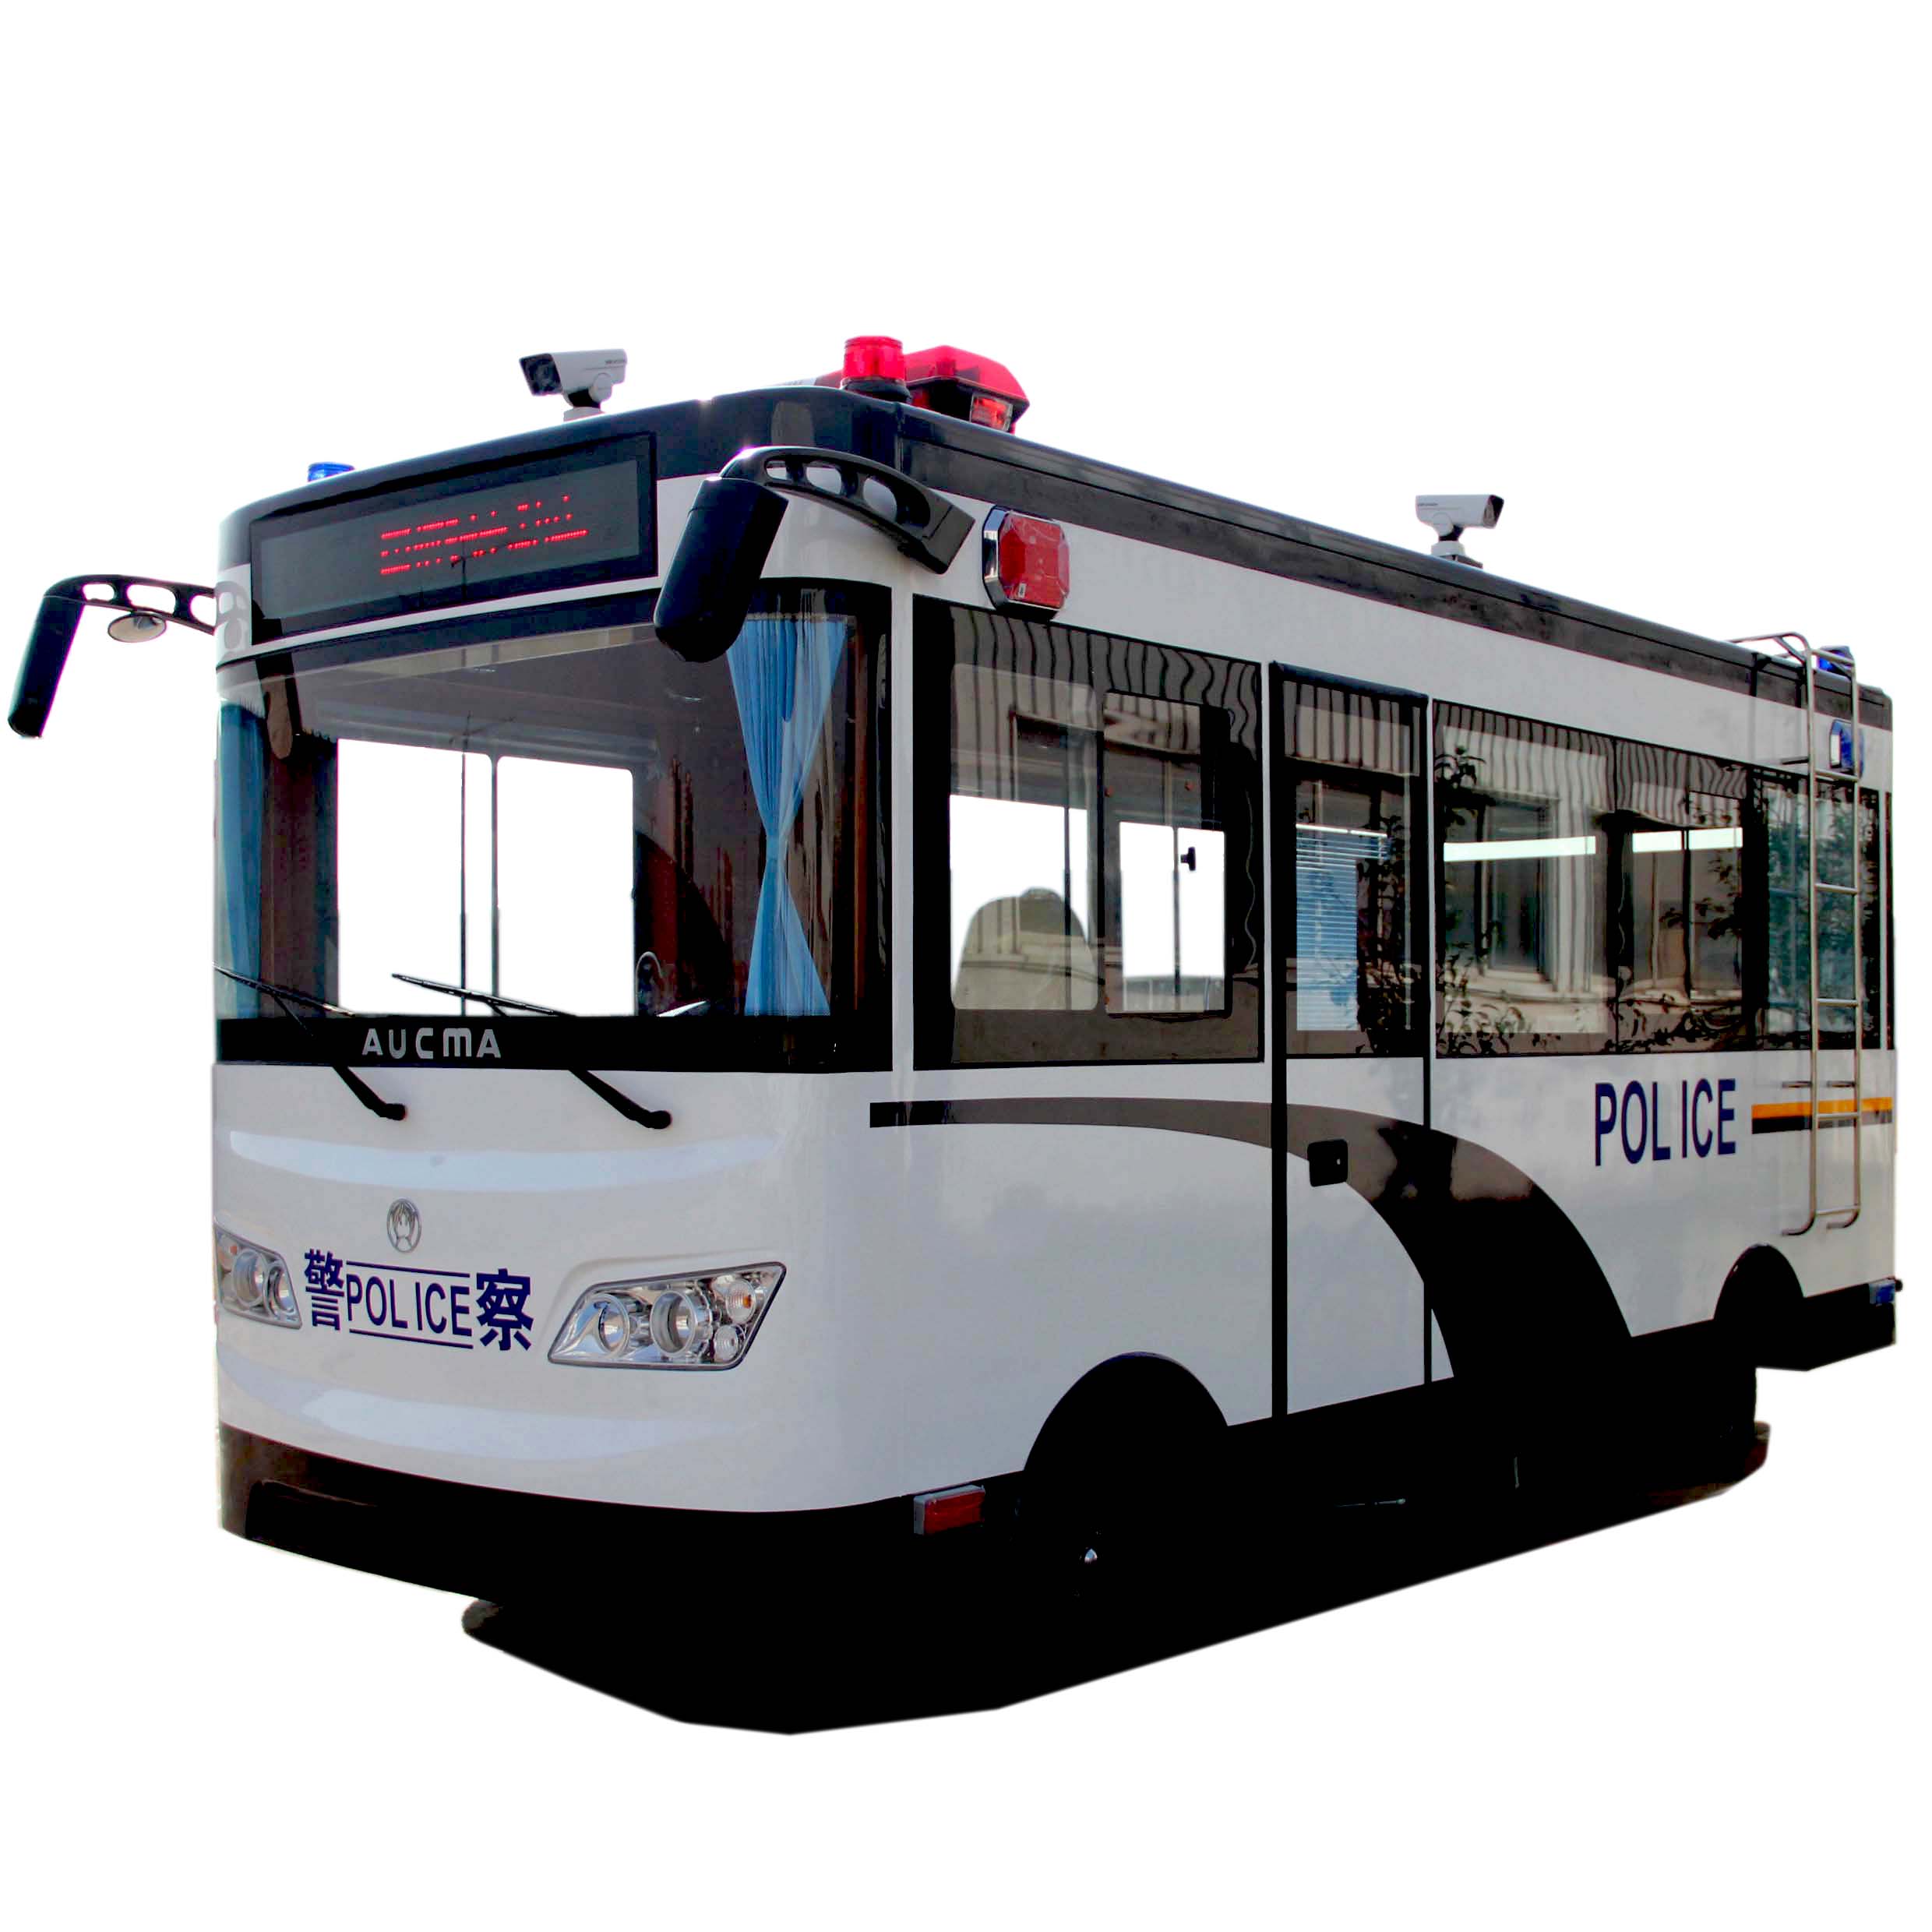 人保财险驻马店市分公司向汝南县捐赠10辆治安巡逻车DV6586